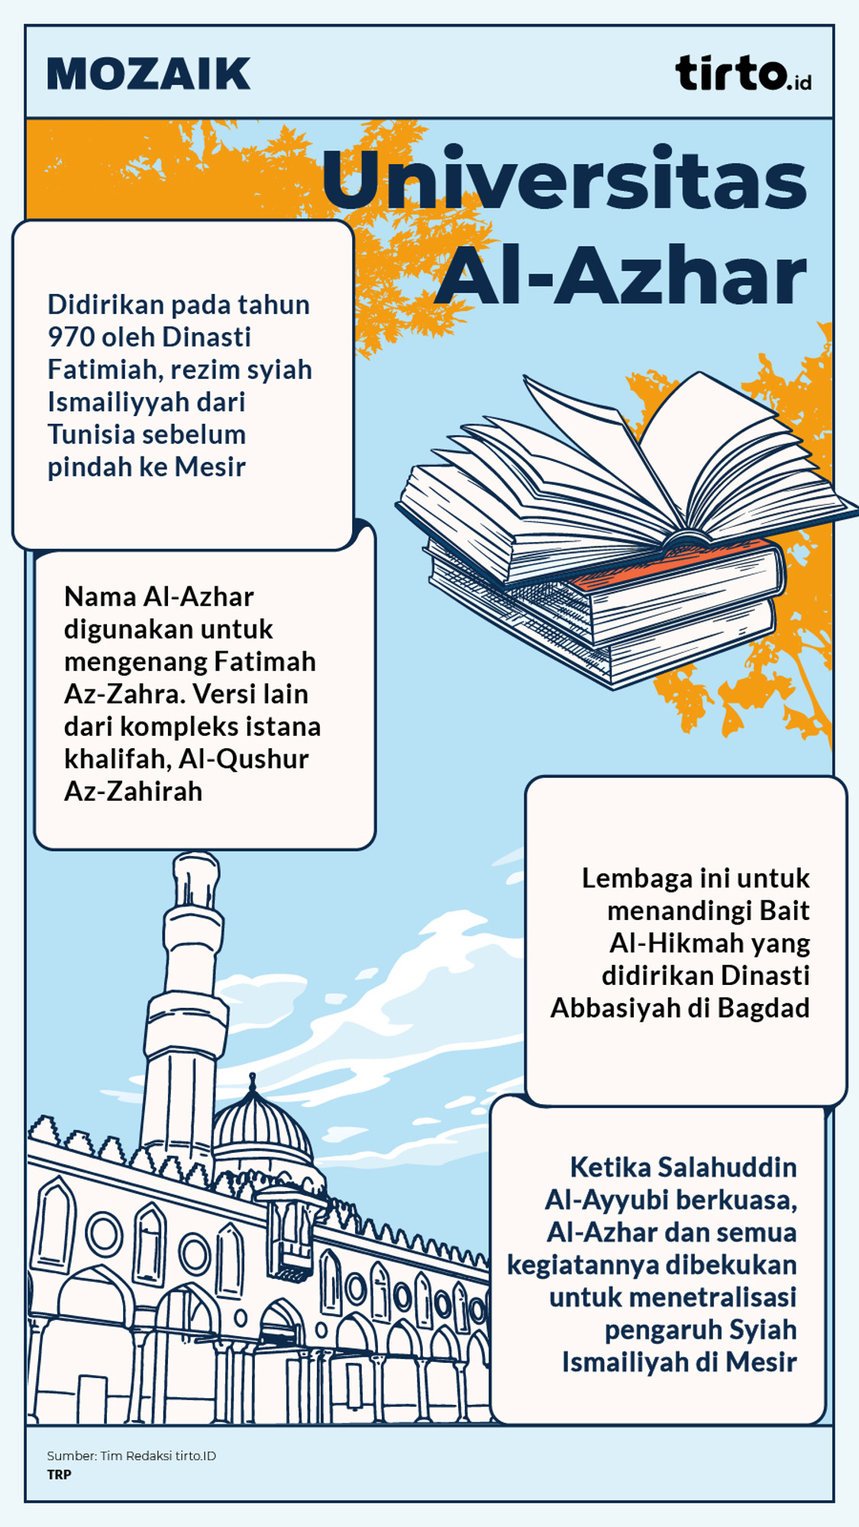 Infografik Mozaik Universitas Al-Azhar